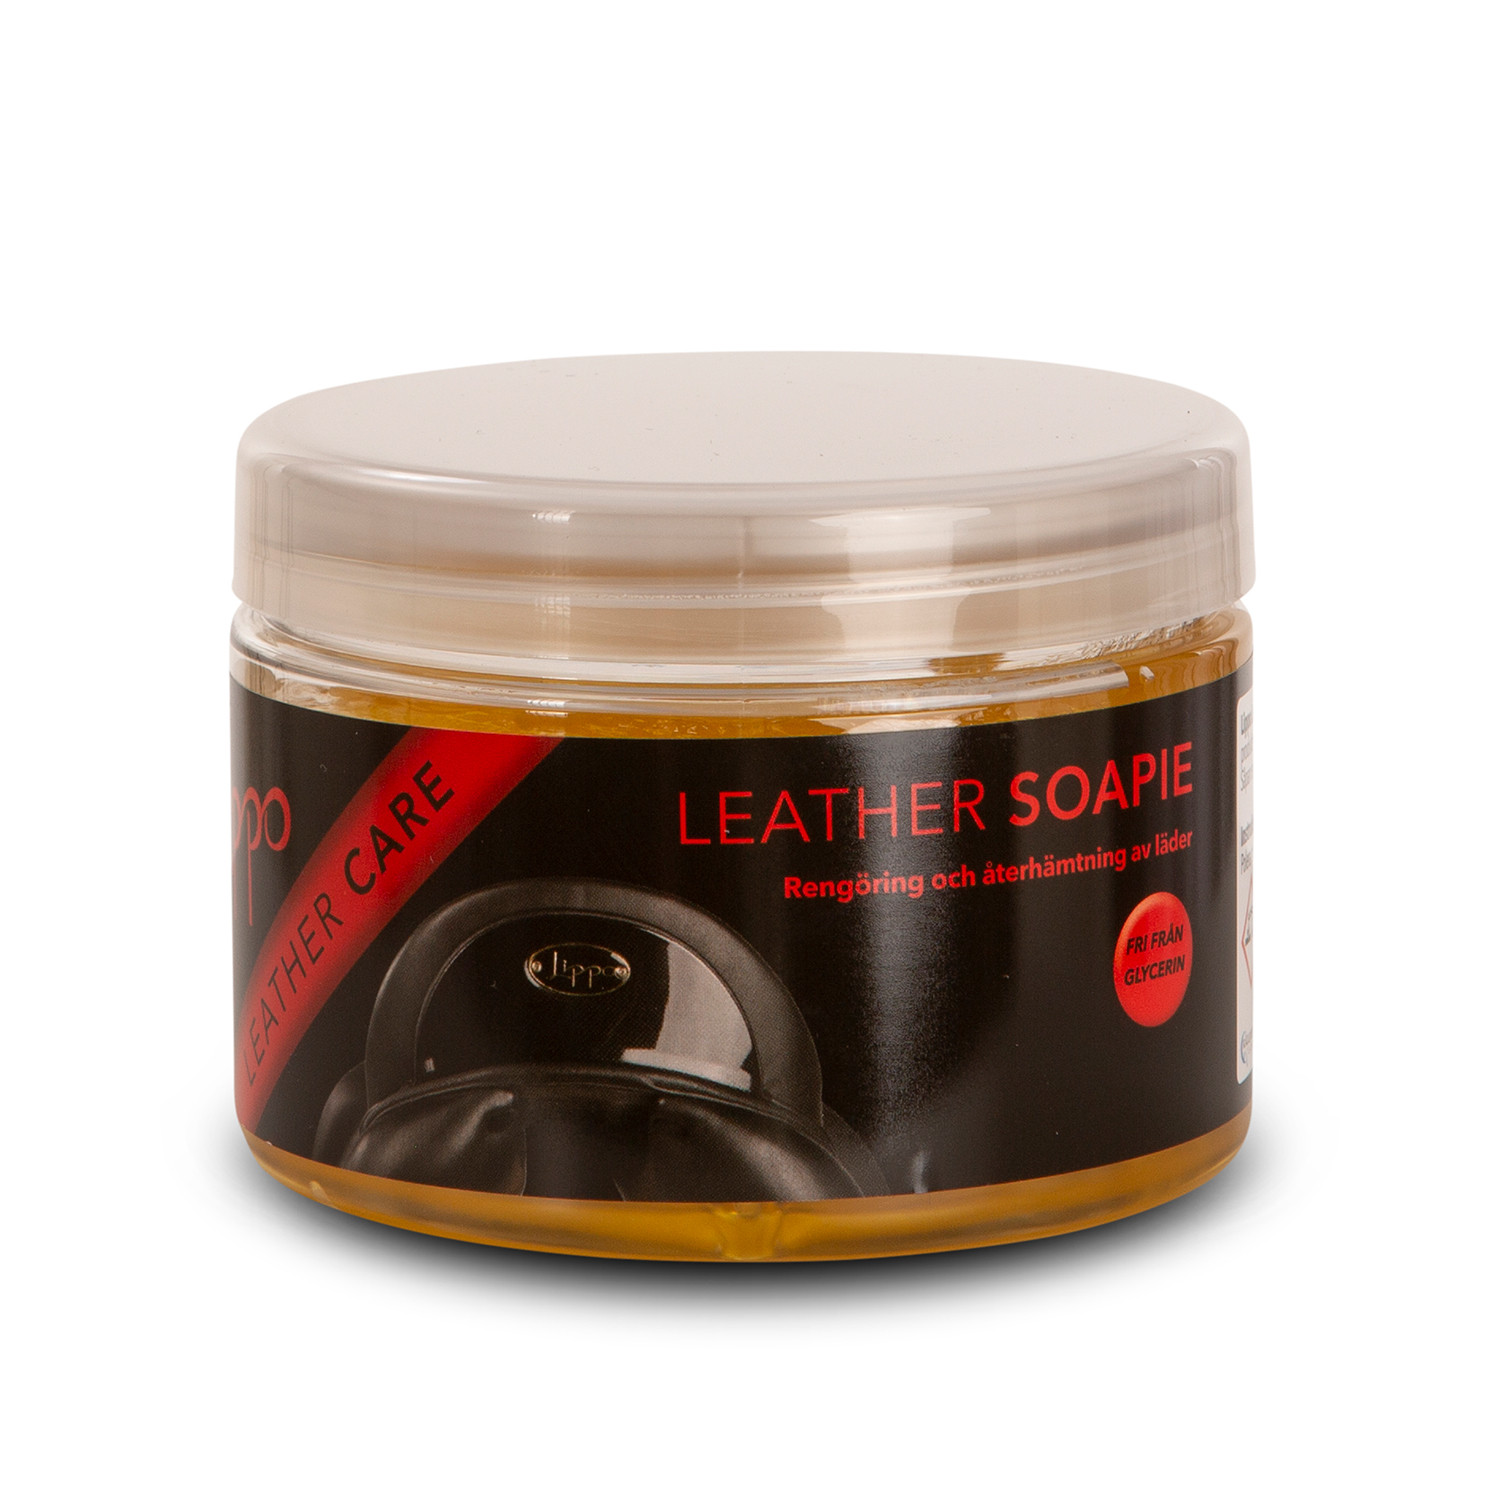 Leather Soapie Lippo, 500 ml